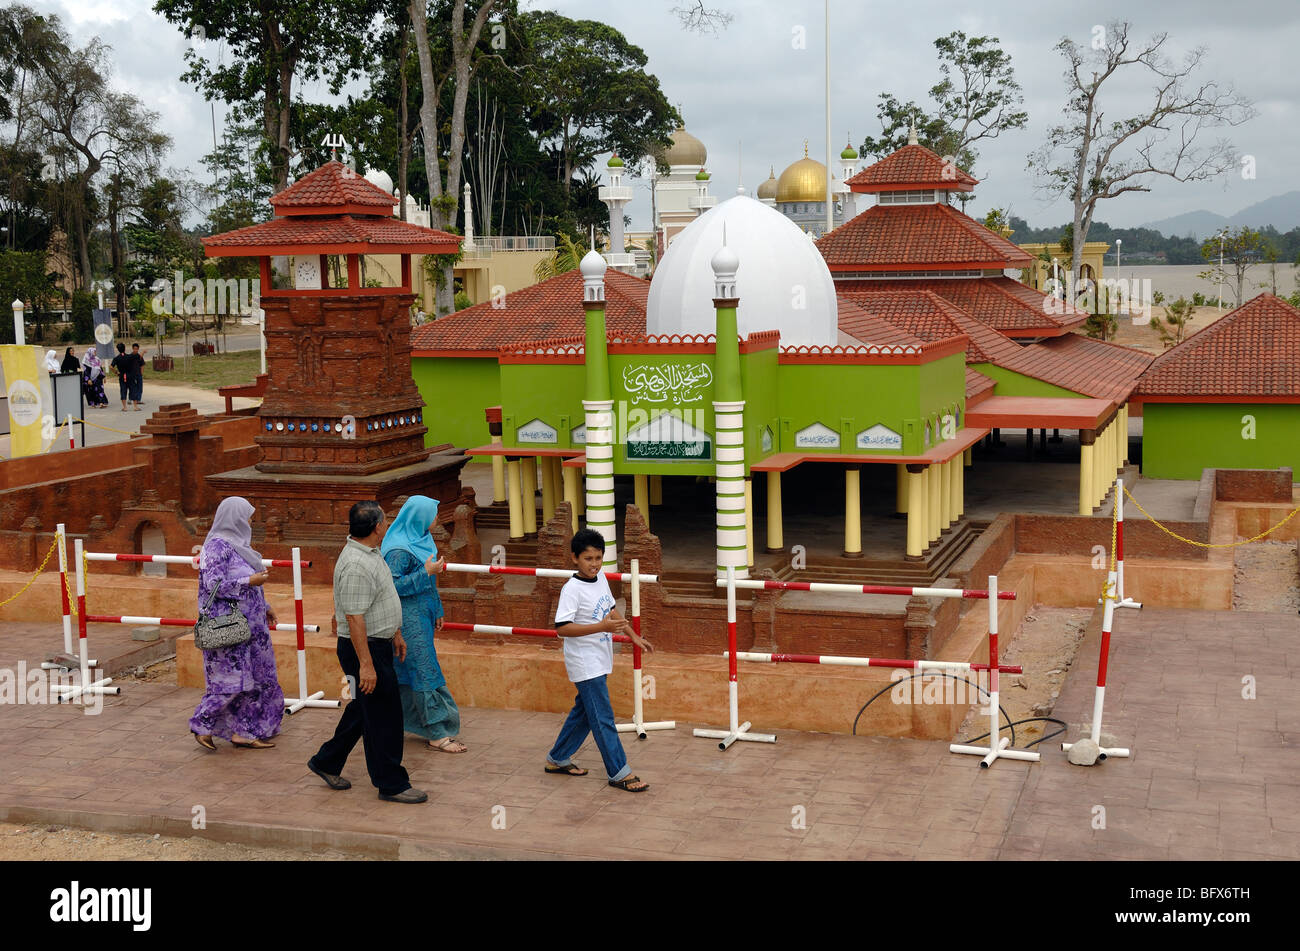 Famiglia malese e modello della moschea di Menara Kudus, nota anche come Moschea di al-Aqsha (Java, Indonesia) al Parco a tema della civiltà Islamica, Kuala Terengganu, Malesia Foto Stock